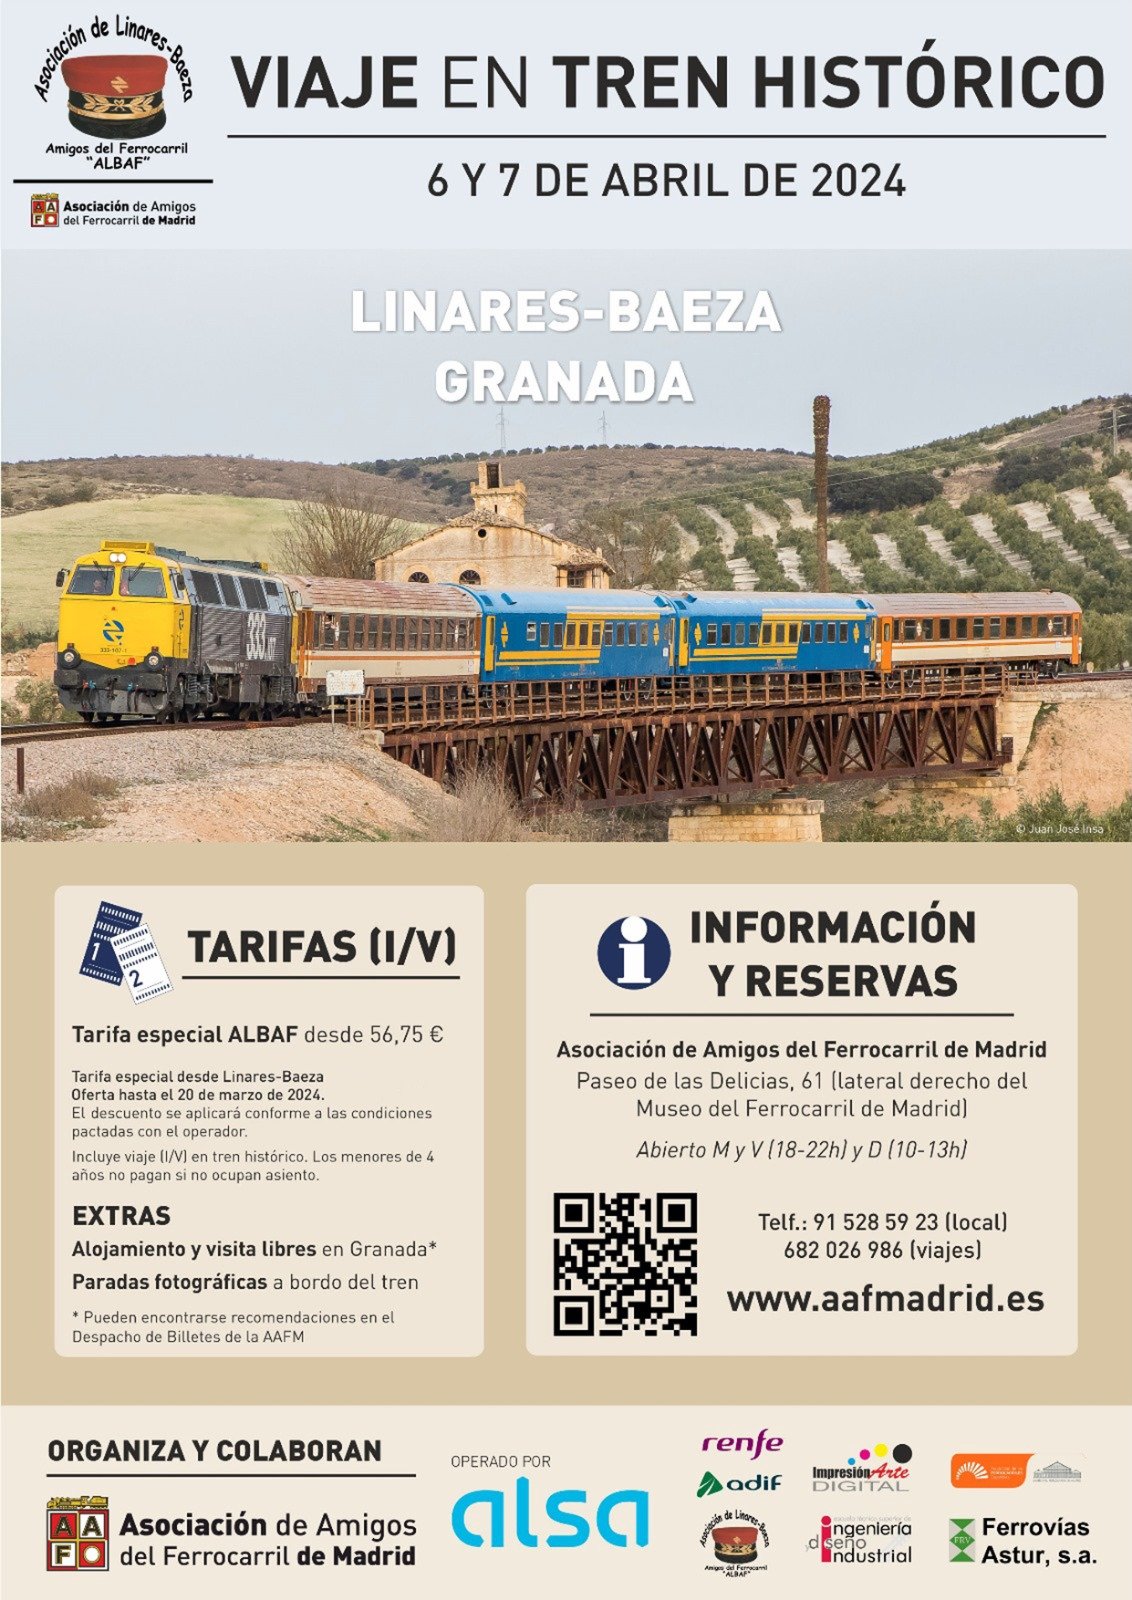 Viaje a Granada en tren histórico